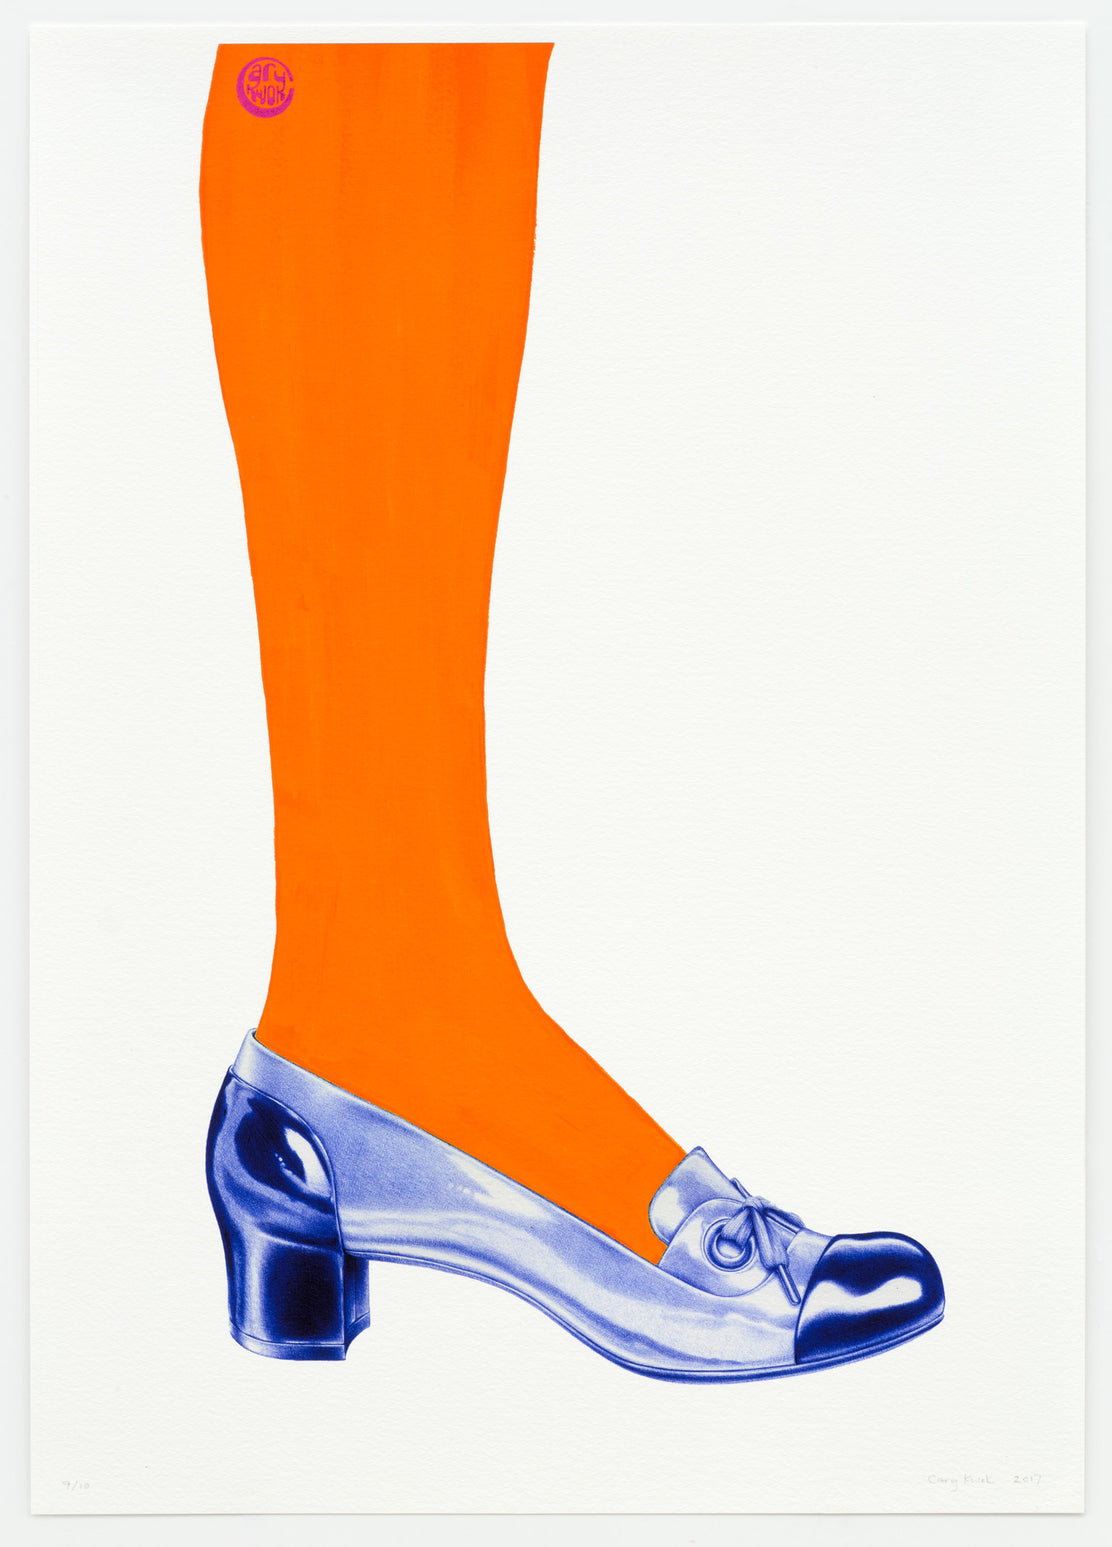 Cary Kwok - Desire - French (1960s) (Orange)